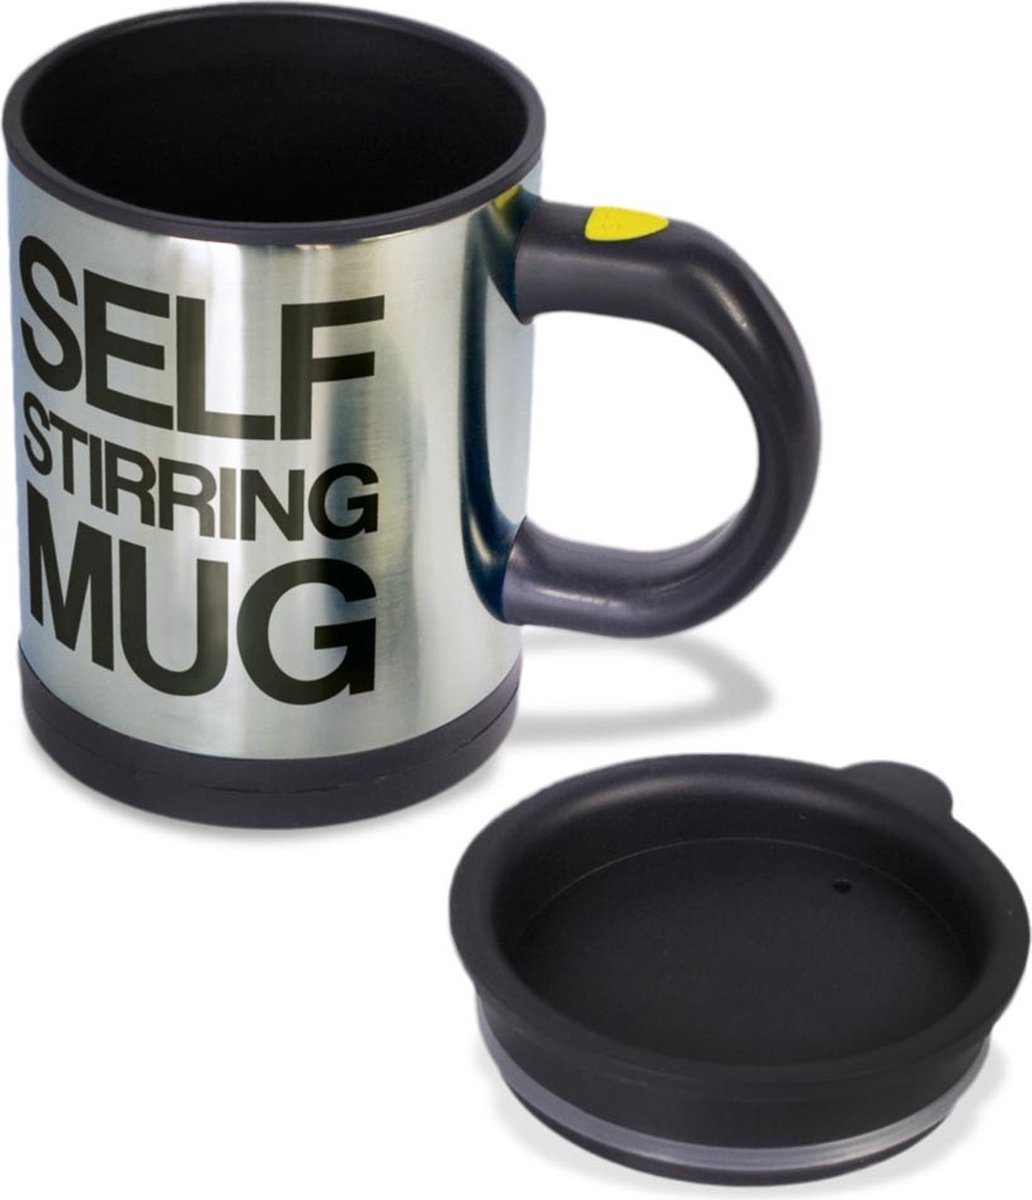 MikaMax Self Stirring Mug- Zelfroerende Mok - Koffiemok - Met Eén Druk Op De Knop Alles Geroerd - Koffiebeker - 350ml